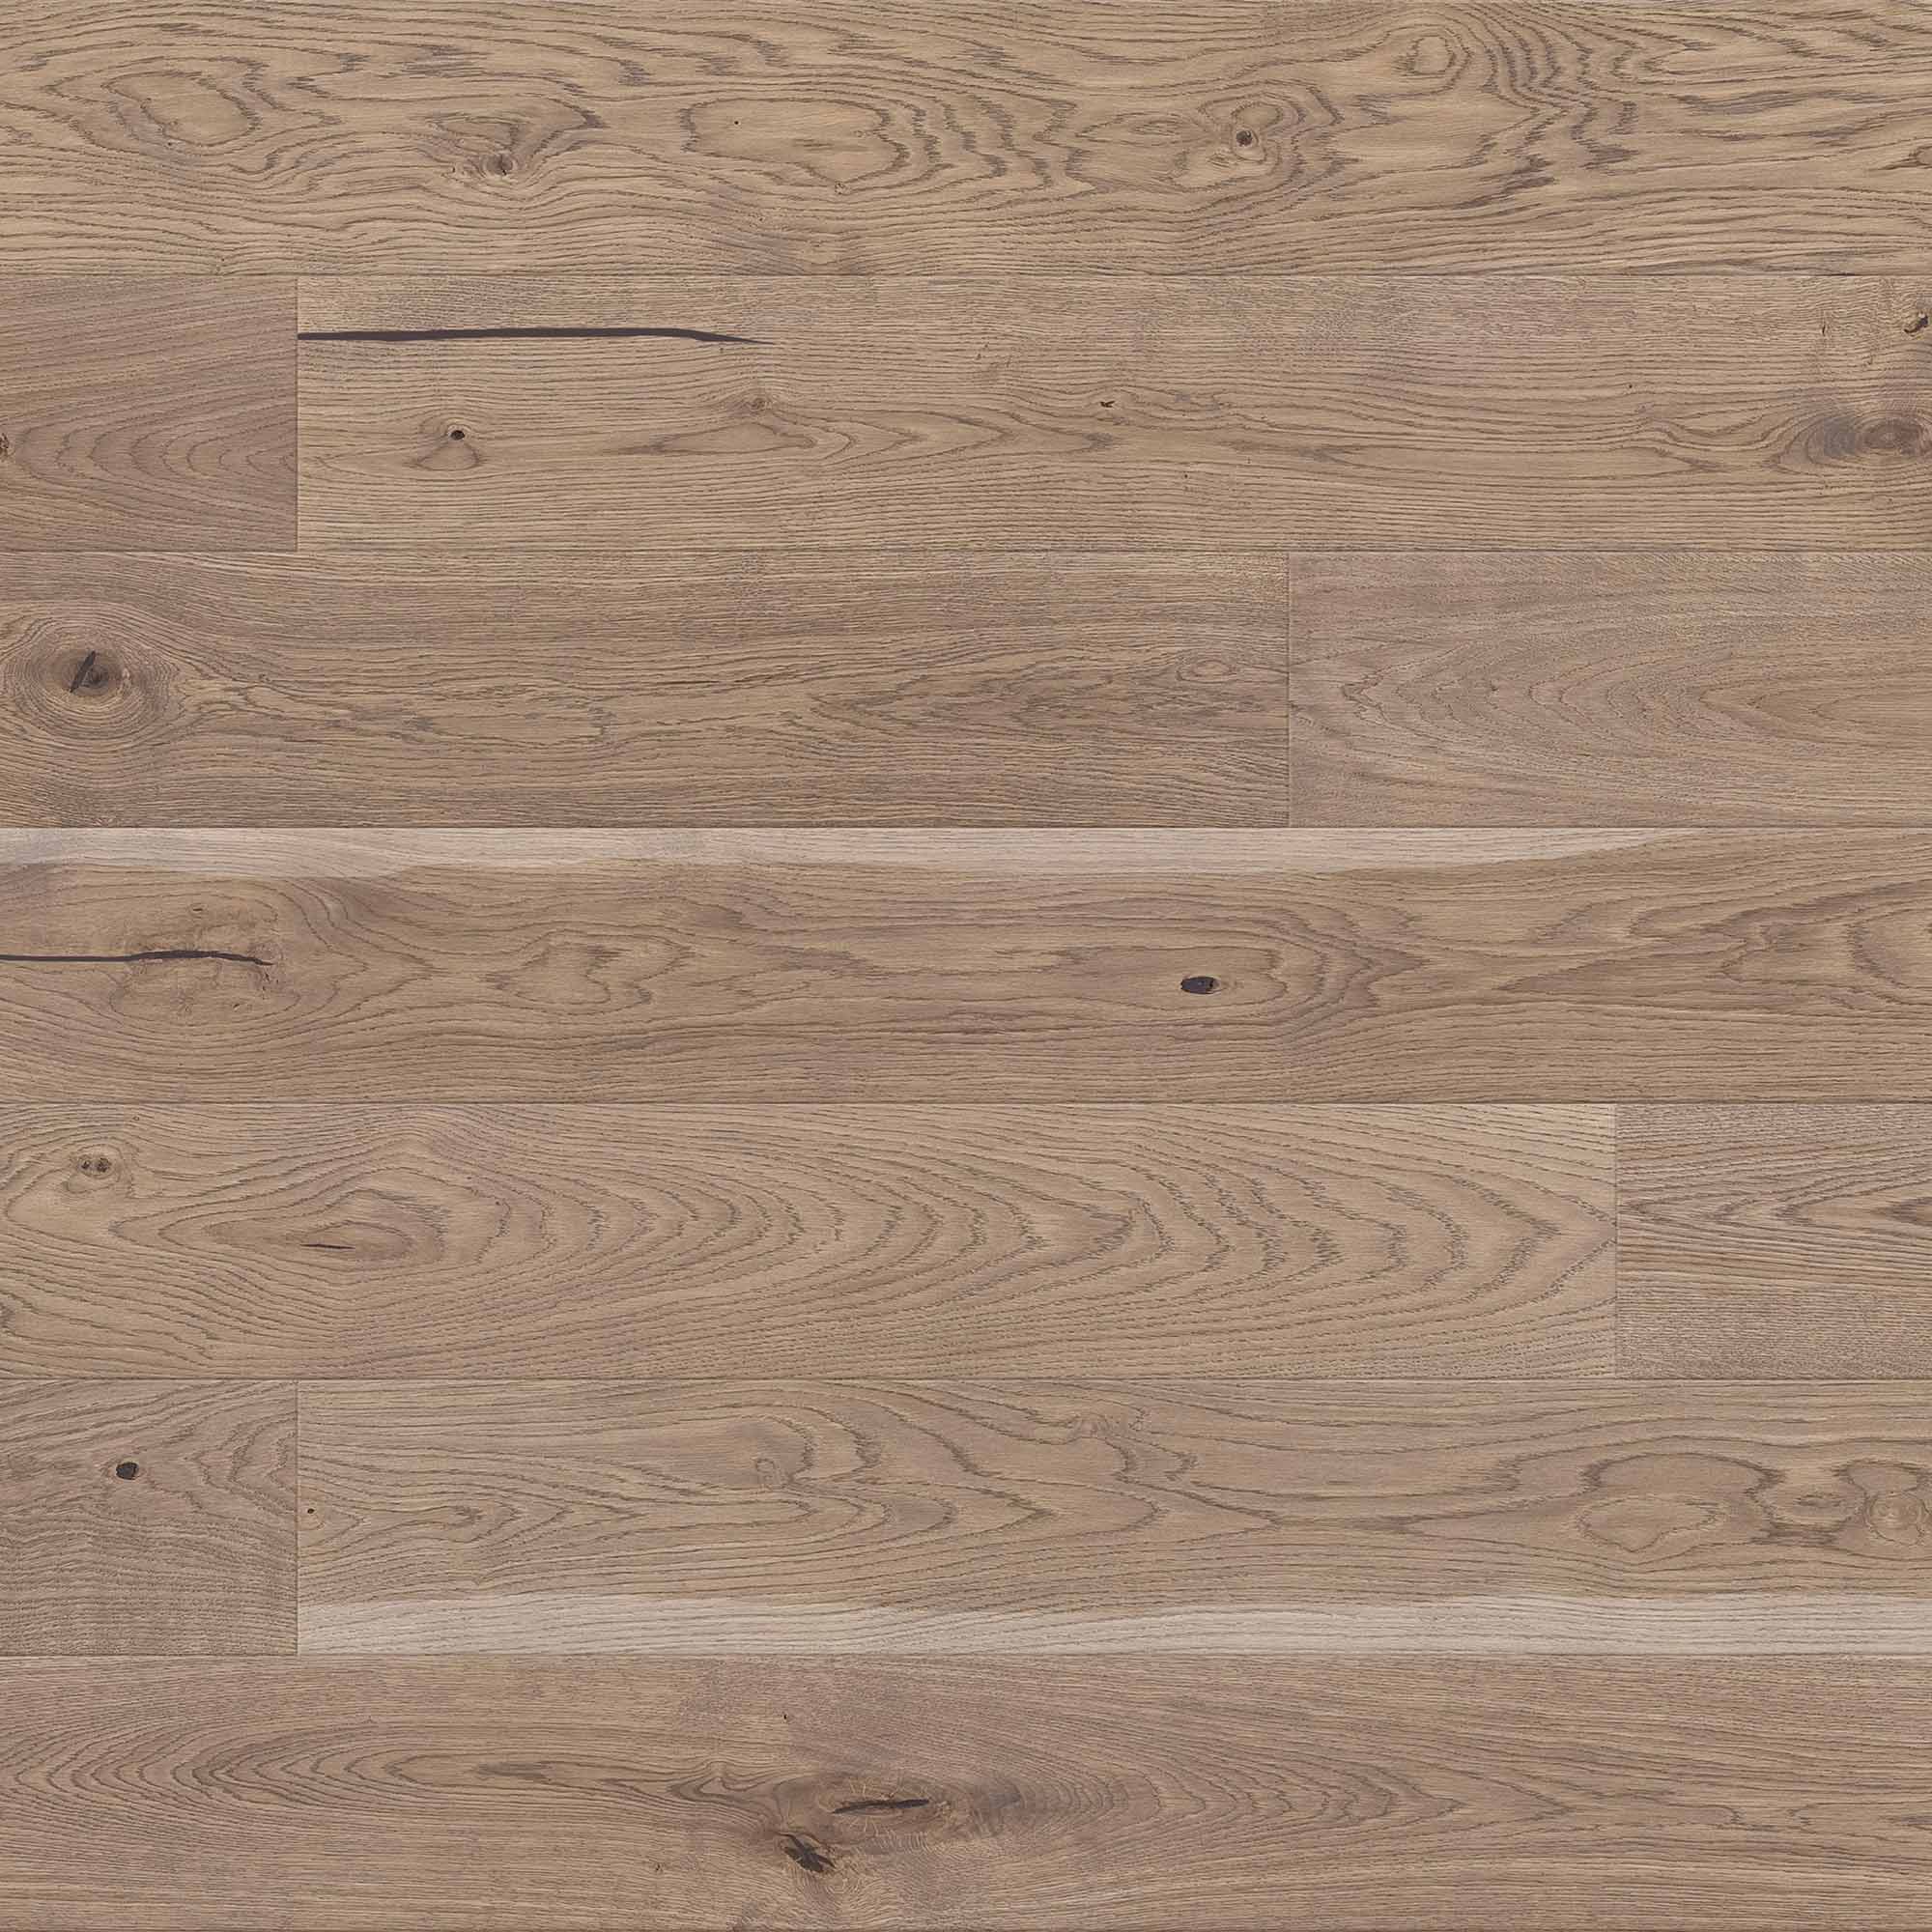 AL107 Pebble Grey Oak - Brushed & Matt Lacquered Rustic Oak Wooden Floor